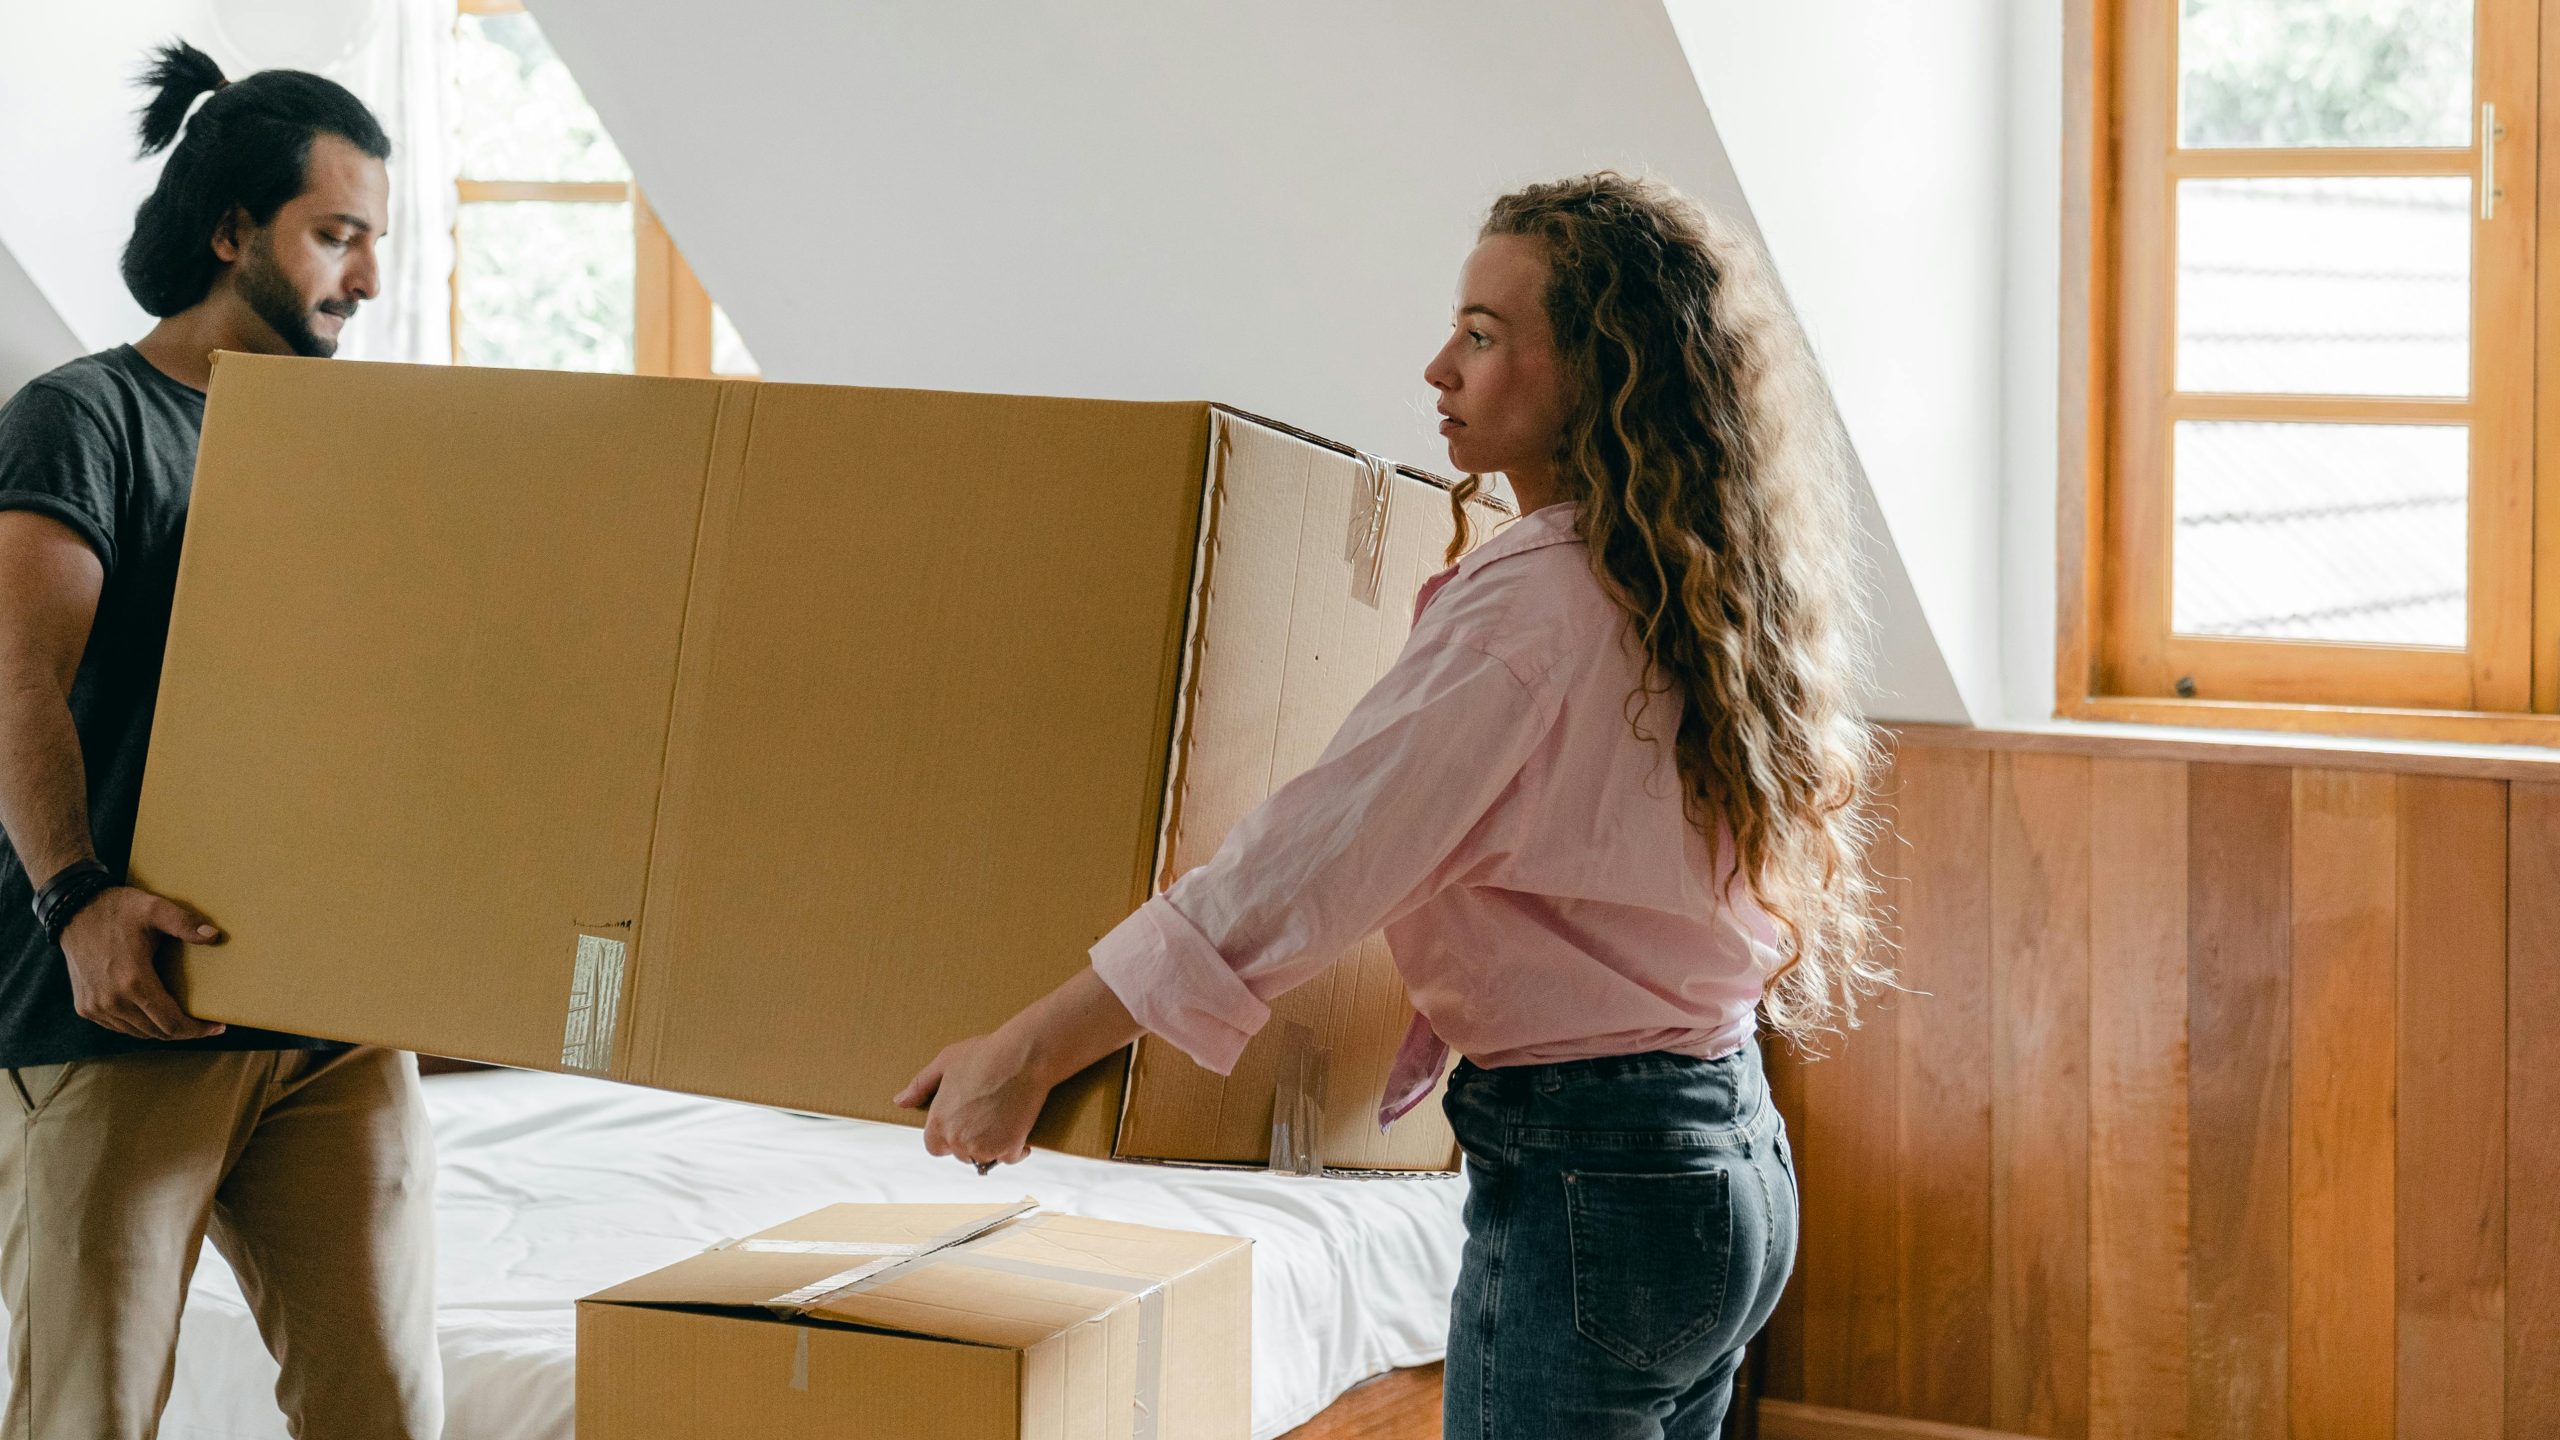 Cruciale stappen en tips voor verhuizen uit huurwoning